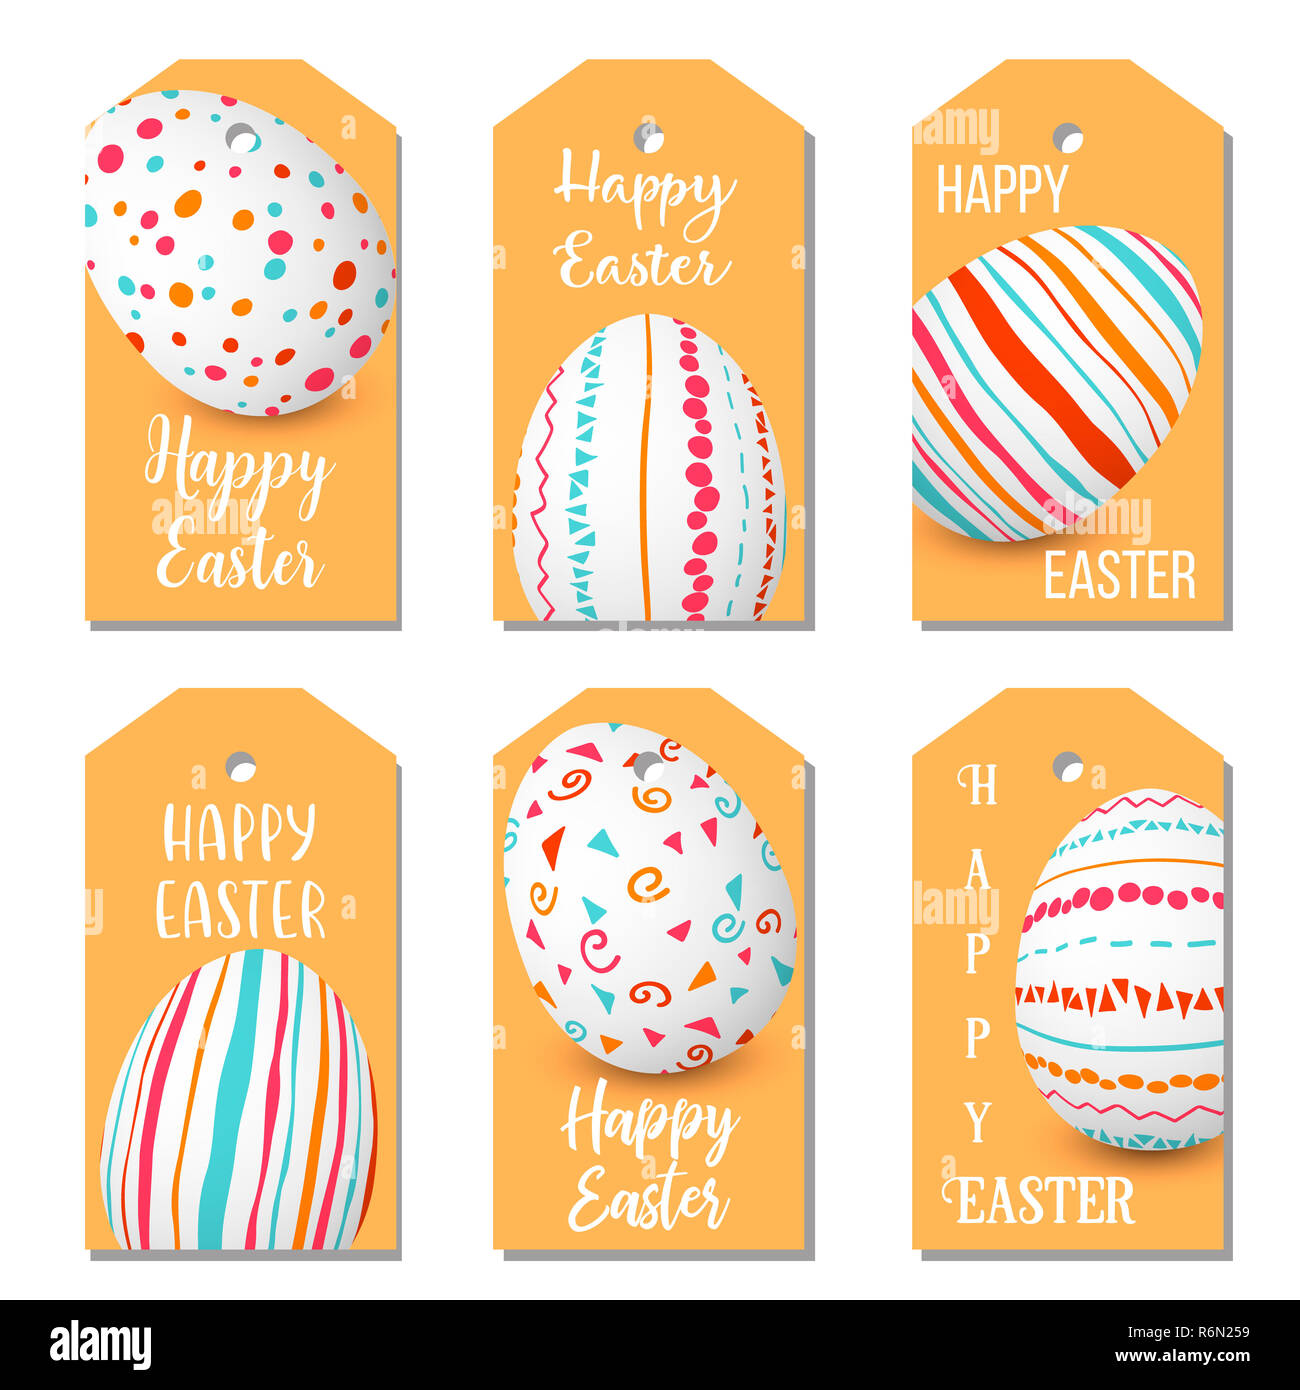 Felice Pasqua uova golden set di etichette. 6 tag di nastro di raccolta uova colorate progettato come etichette. Decorate in maniera semplice ornamenti. Foto Stock